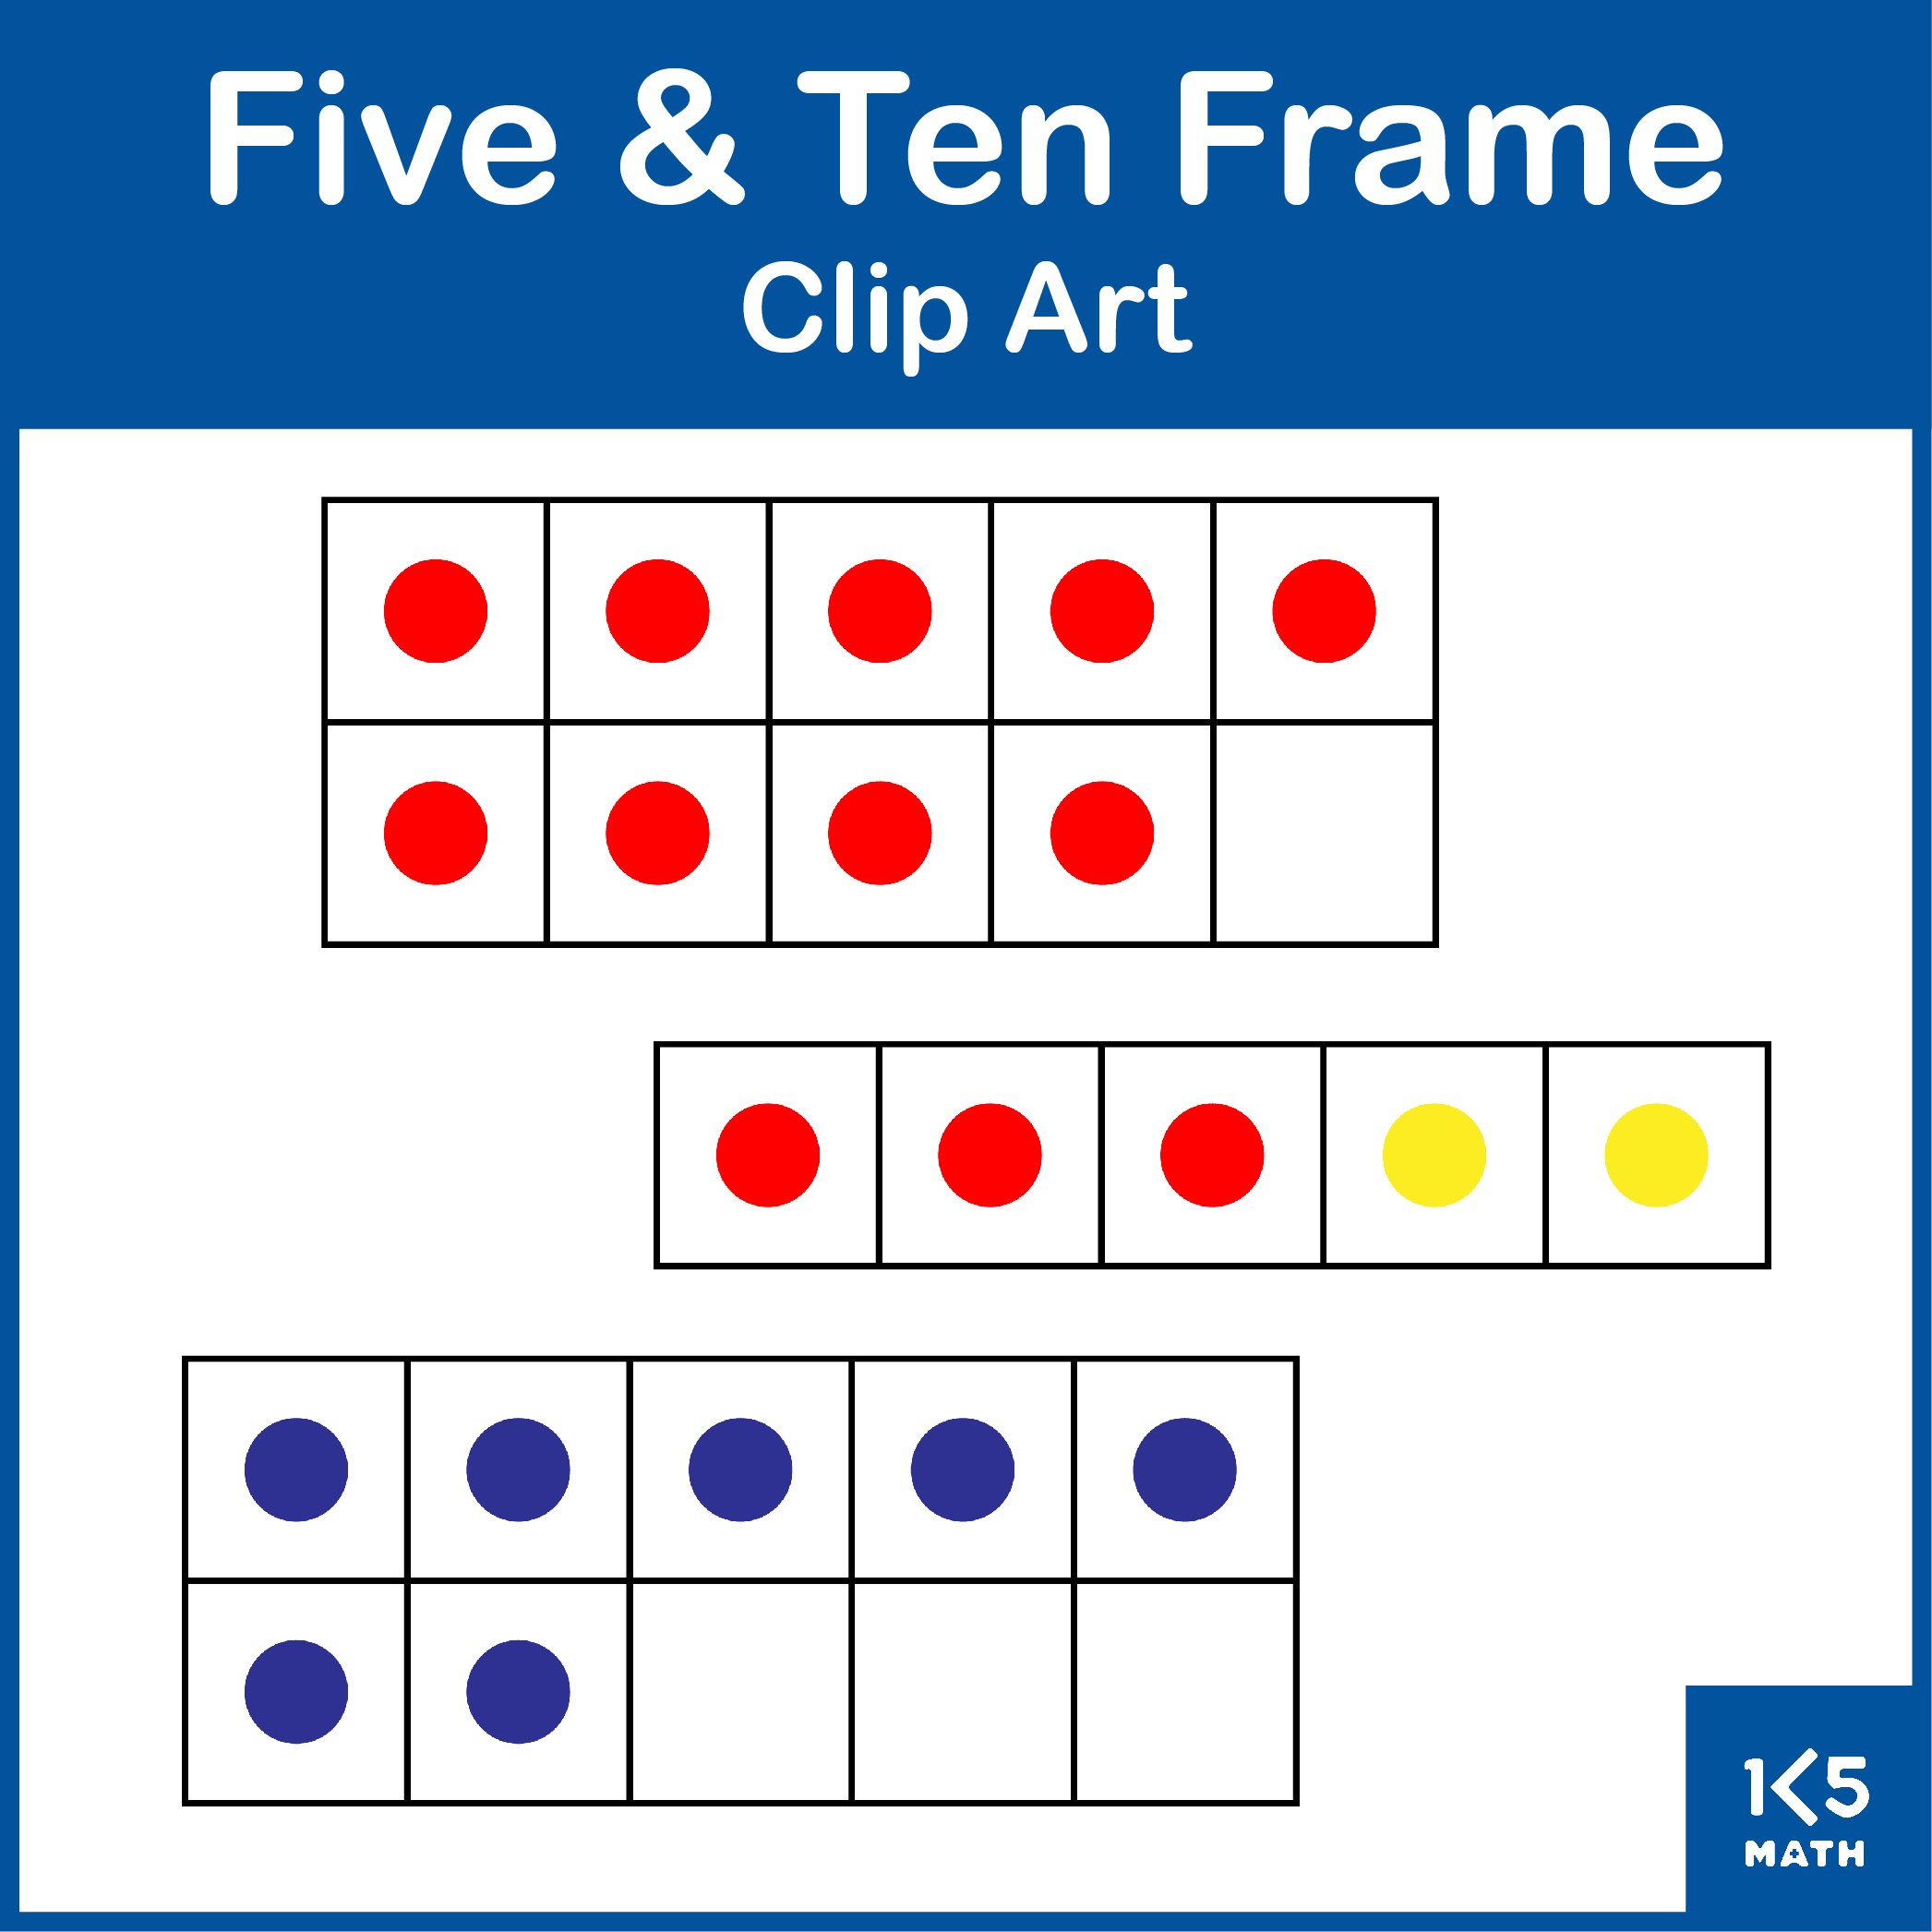 Five & Ten Frame Clip Art